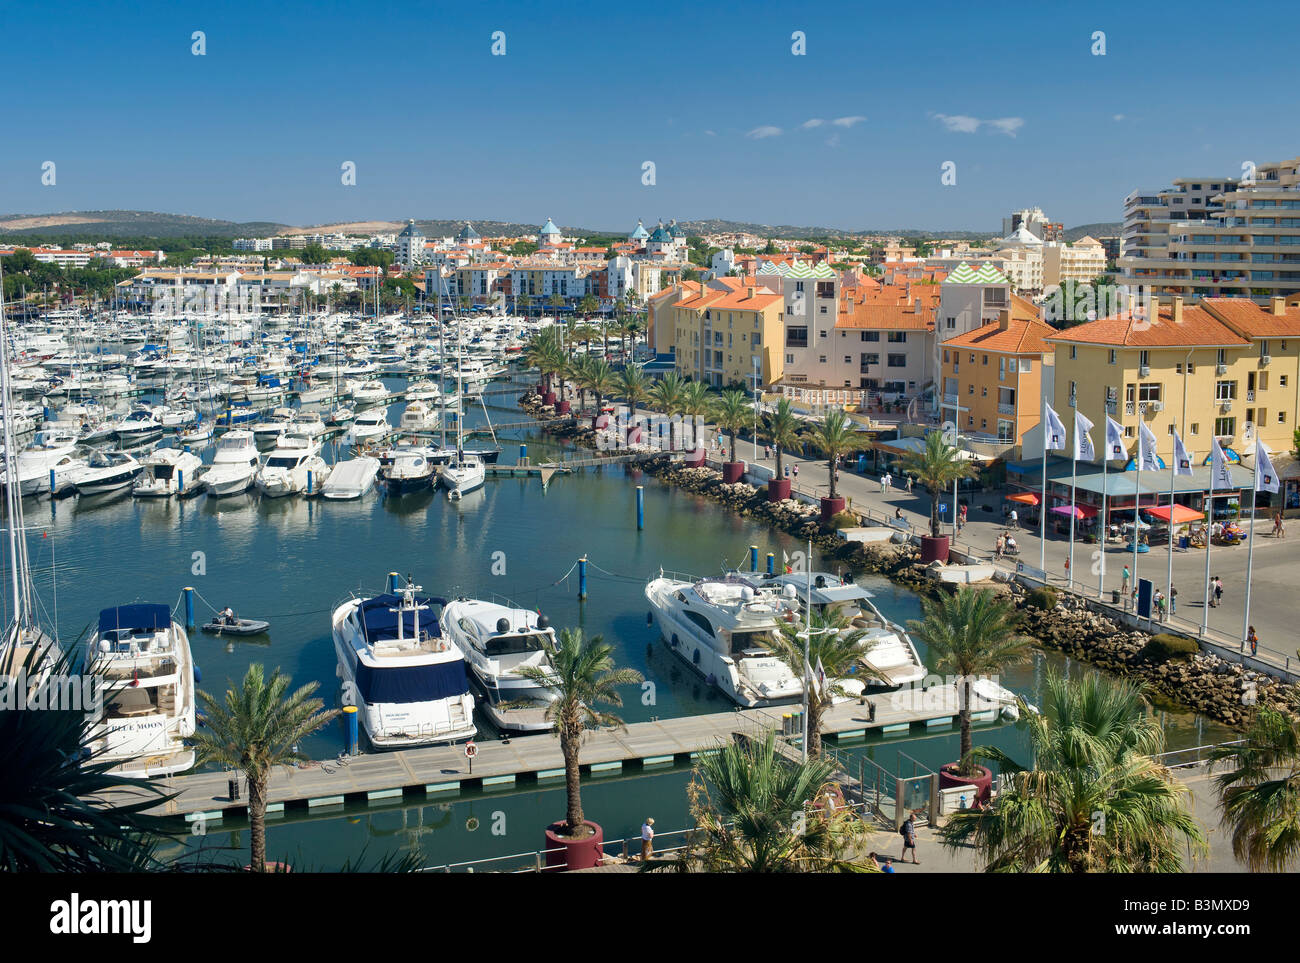 Portugal, The Algarve, Vilamoura, the Marina Stock Photo